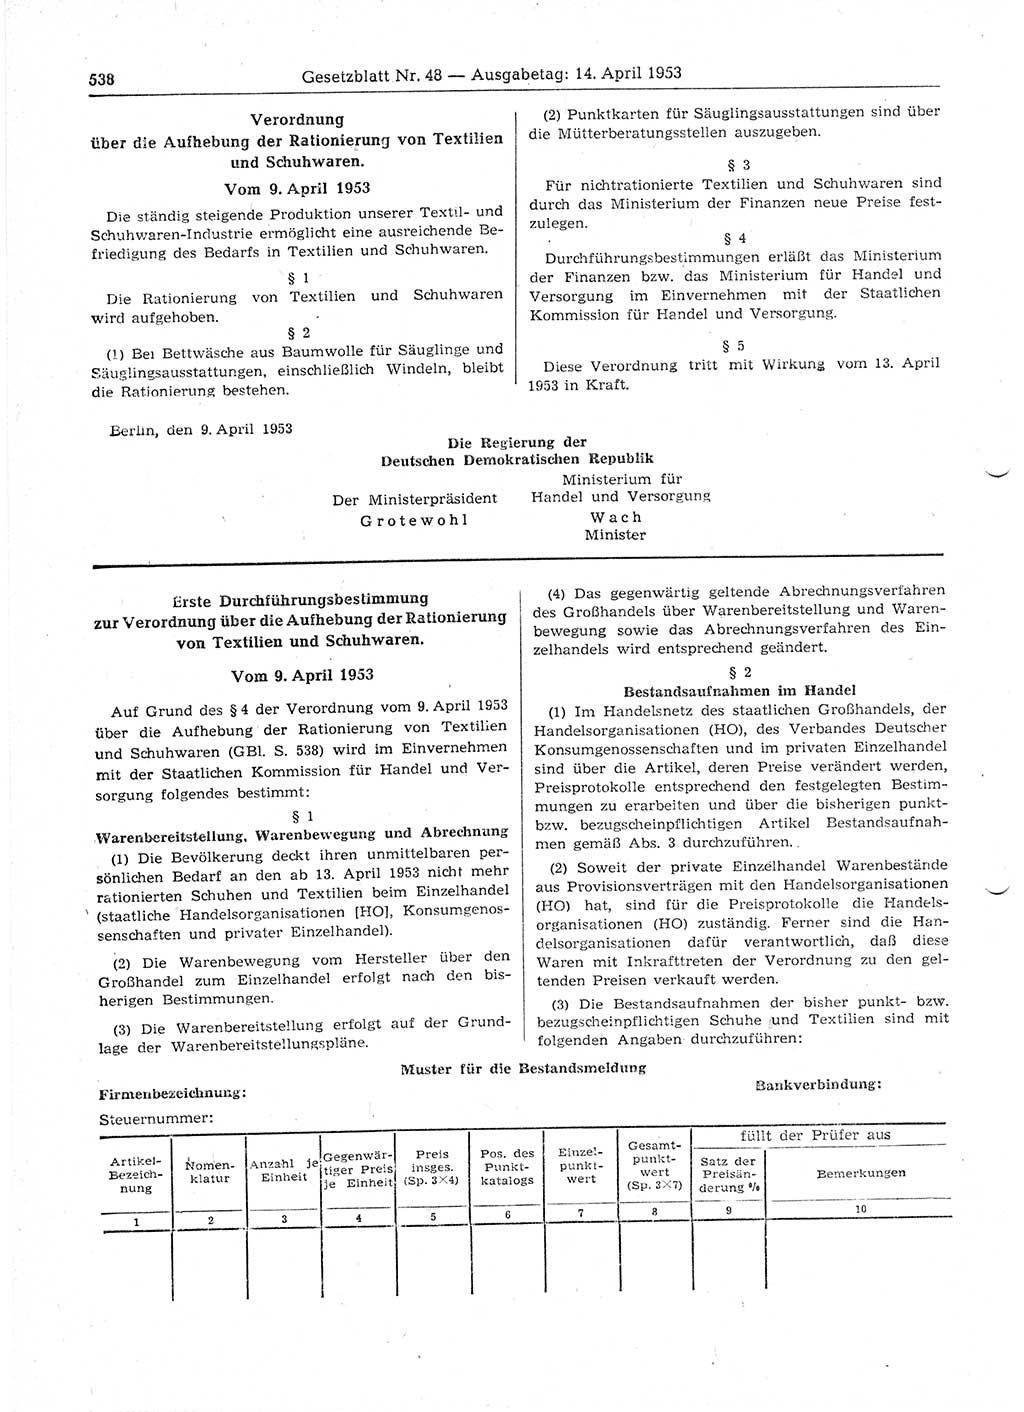 Gesetzblatt (GBl.) der Deutschen Demokratischen Republik (DDR) 1953, Seite 538 (GBl. DDR 1953, S. 538)